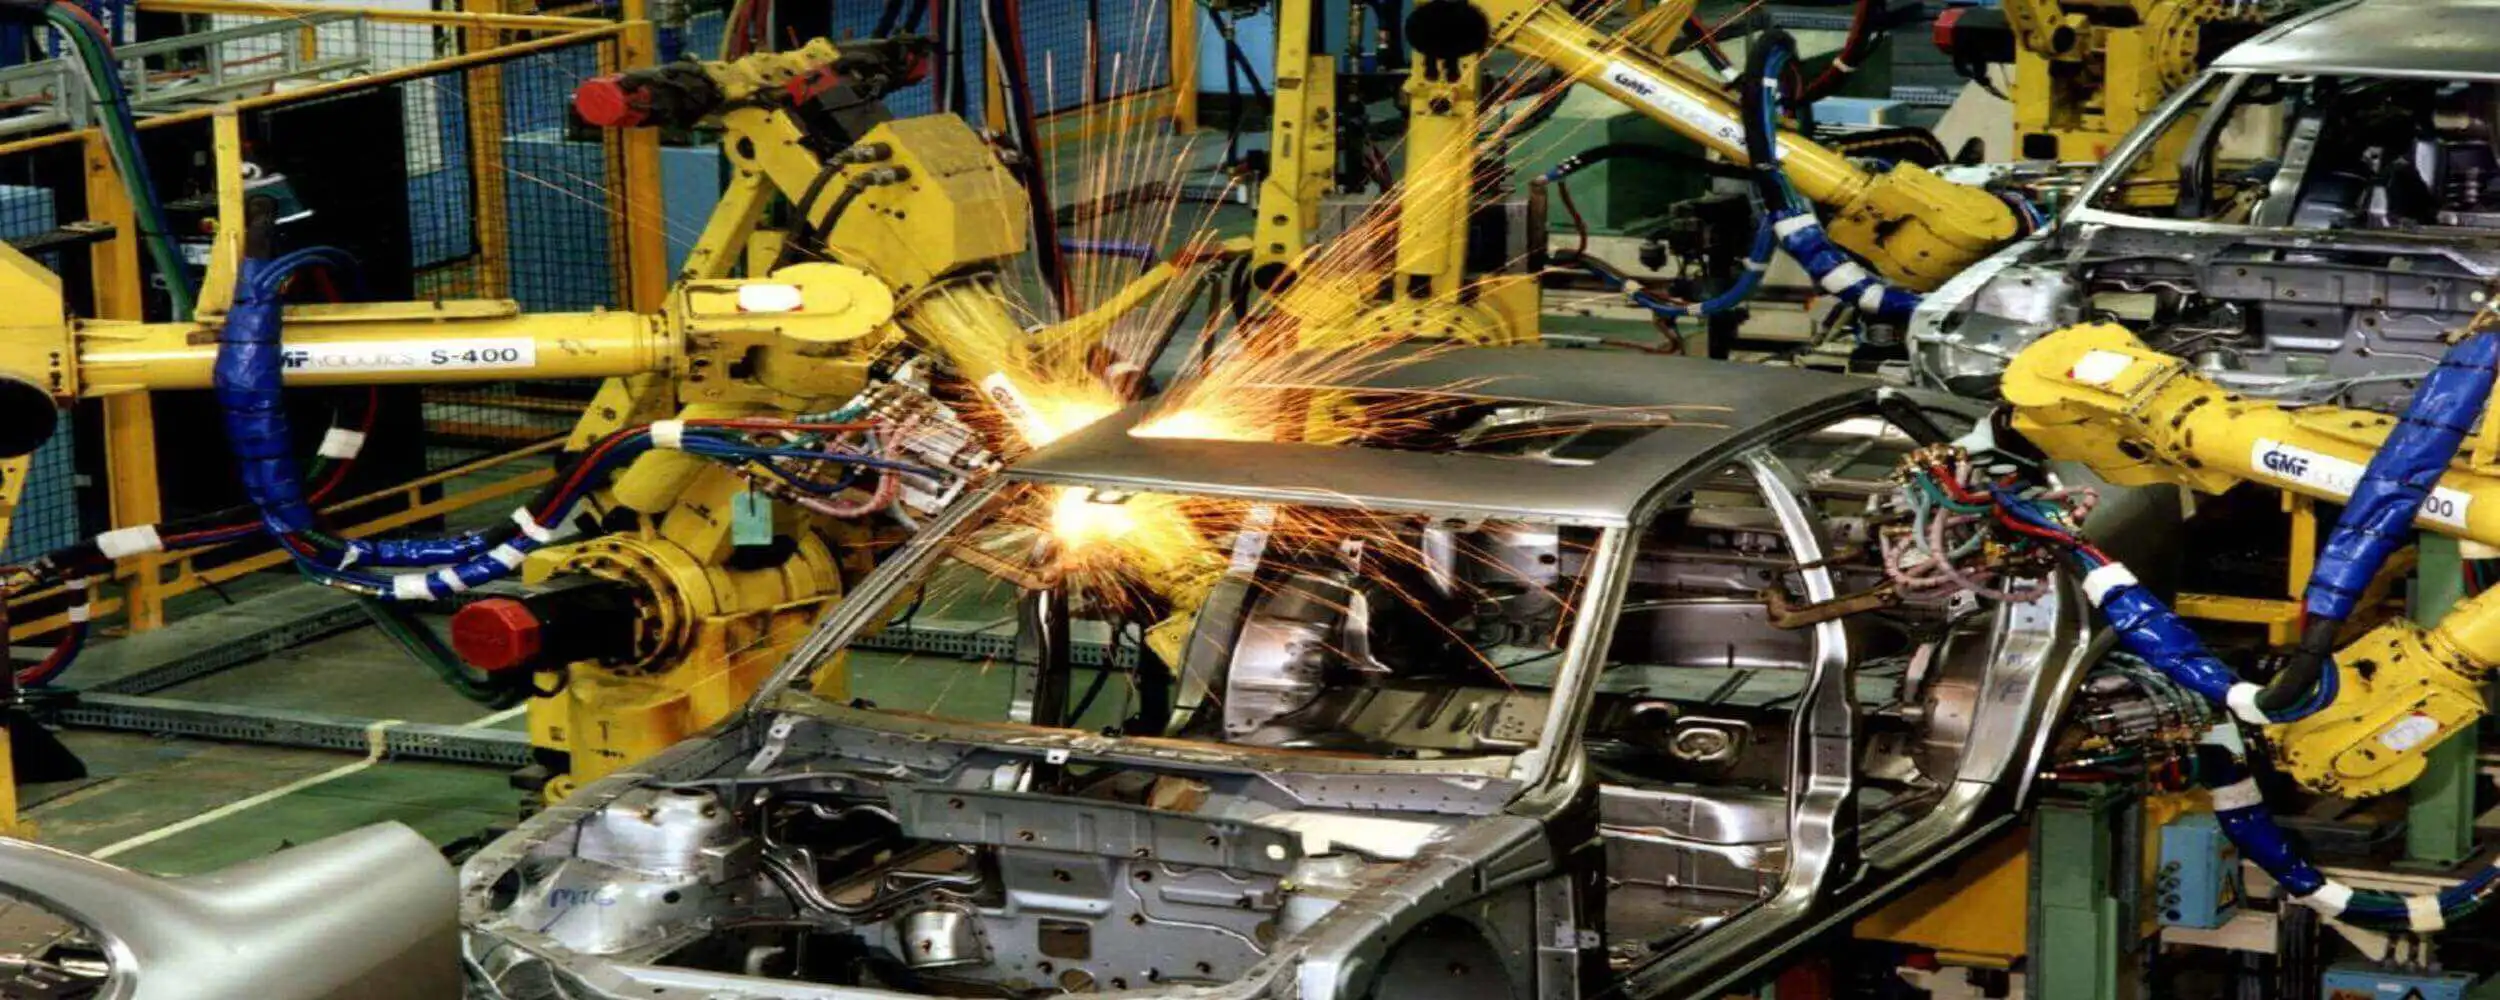 car welding robots